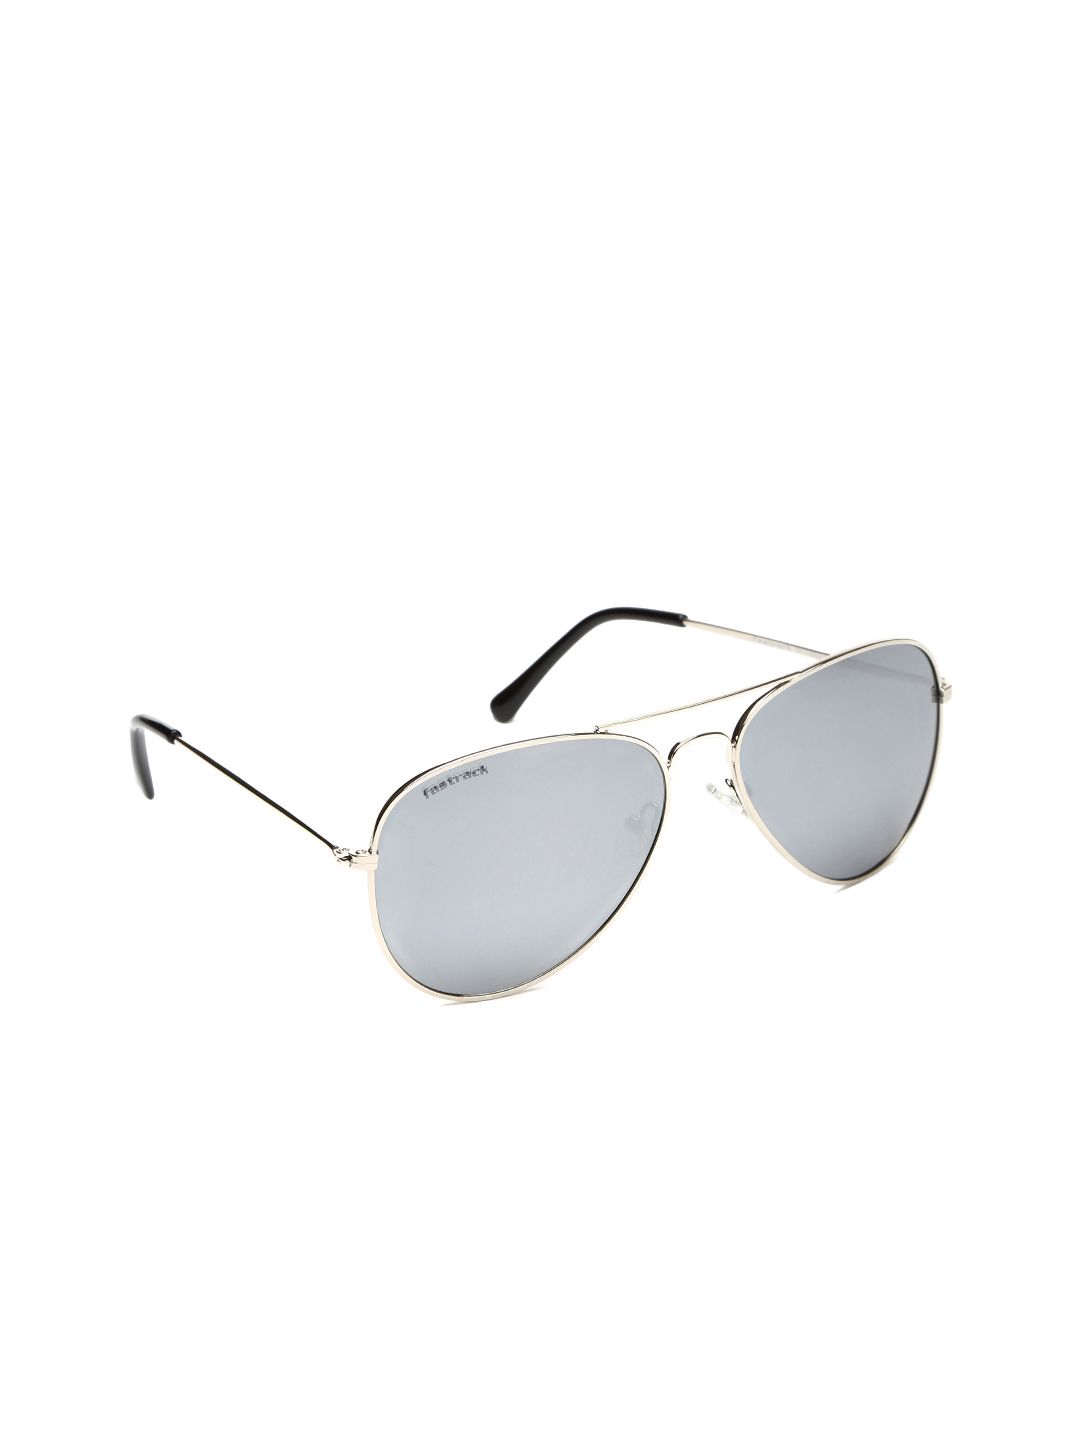 Fastrack Unisex Mirrored Sunglasses M138BK4 Price in India